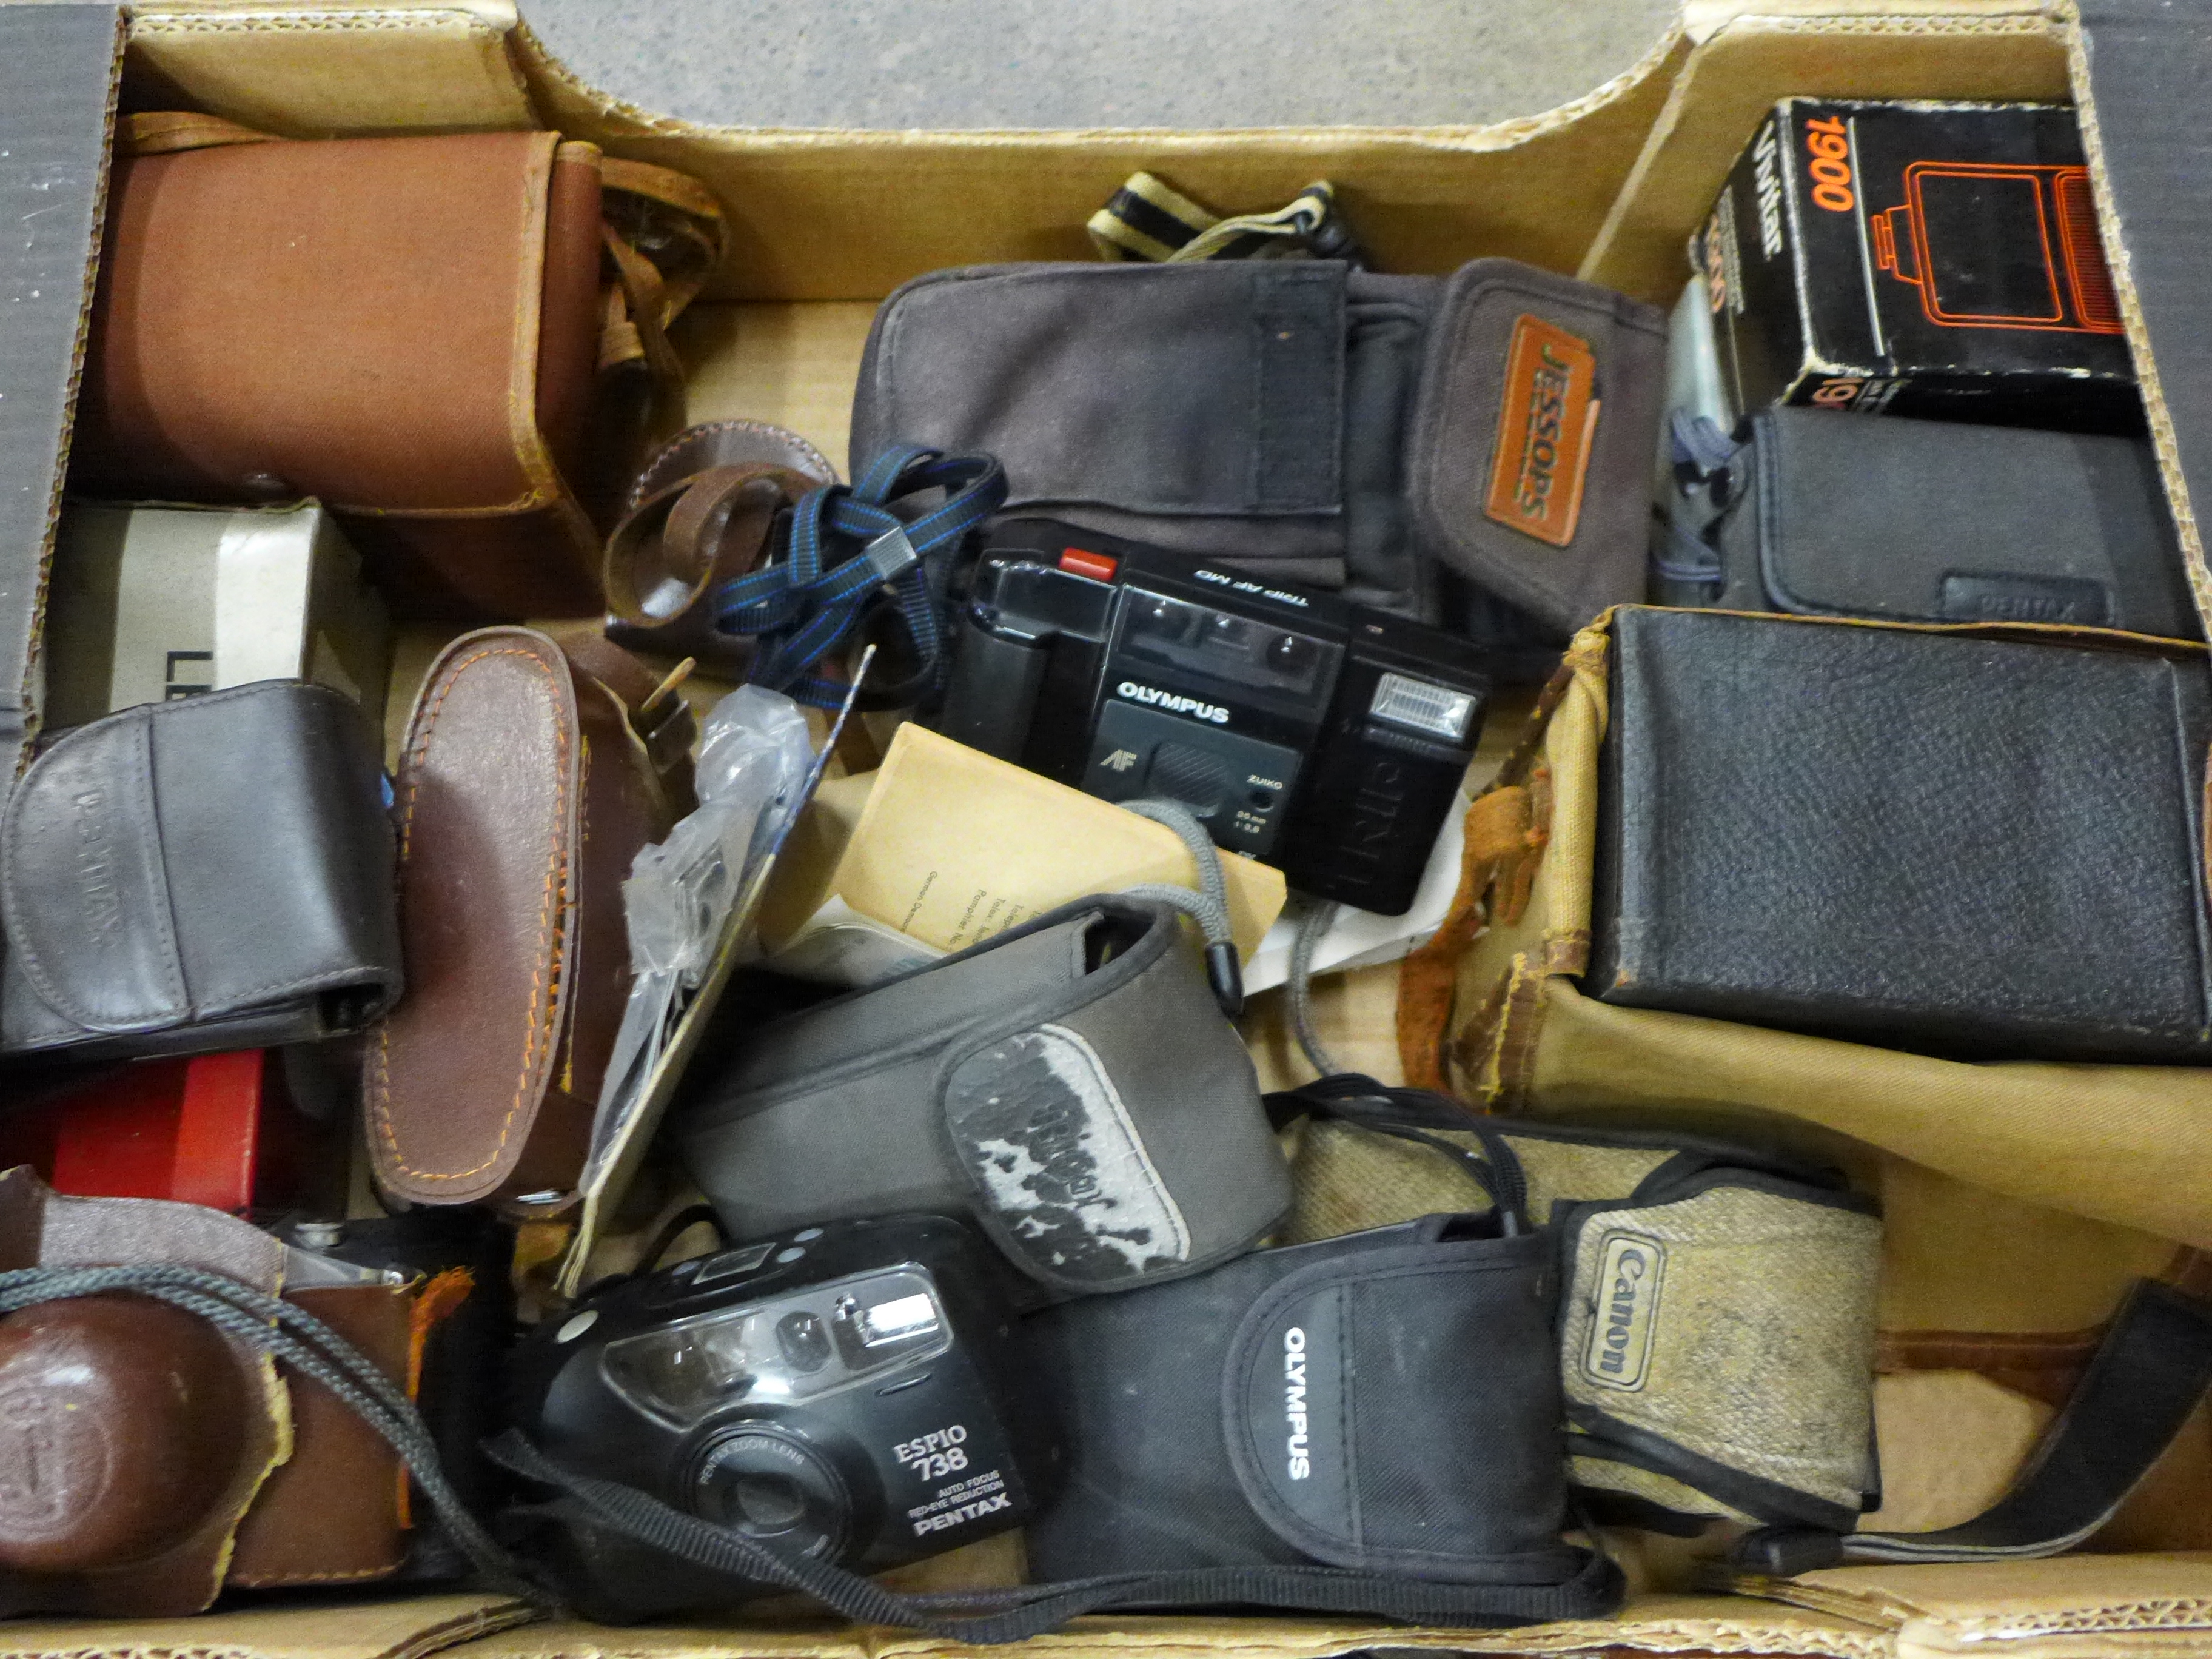 Vintage cameras including Praktica, Zenit, etc. - Image 4 of 4